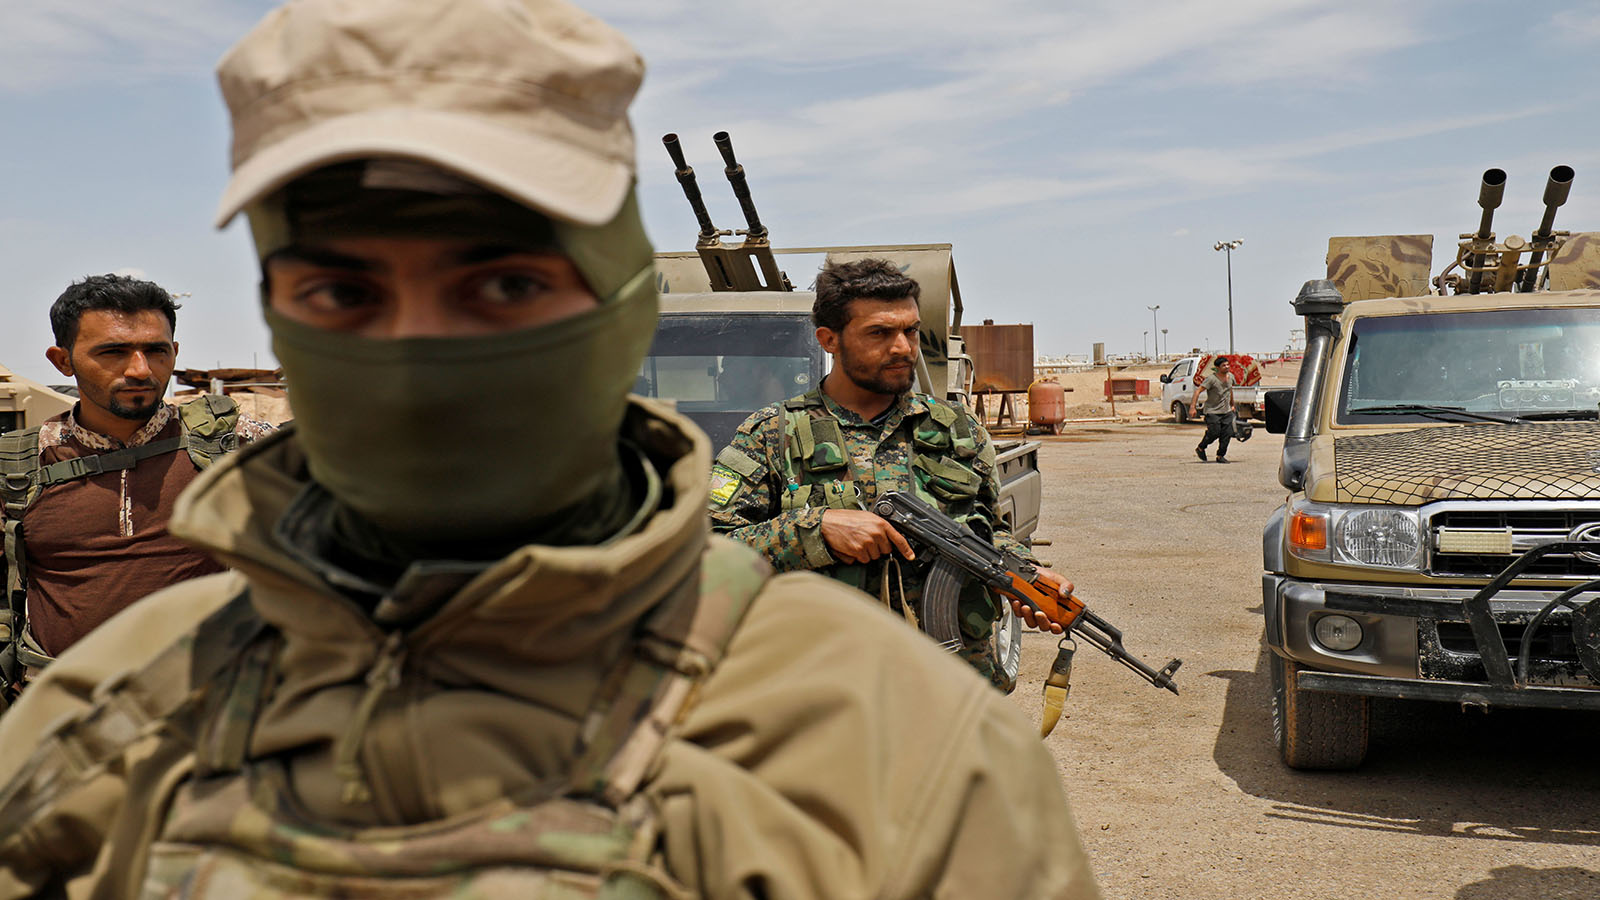 ديرالزور:خلايا "داعش" تعود للعمل في مناطق "قسد"